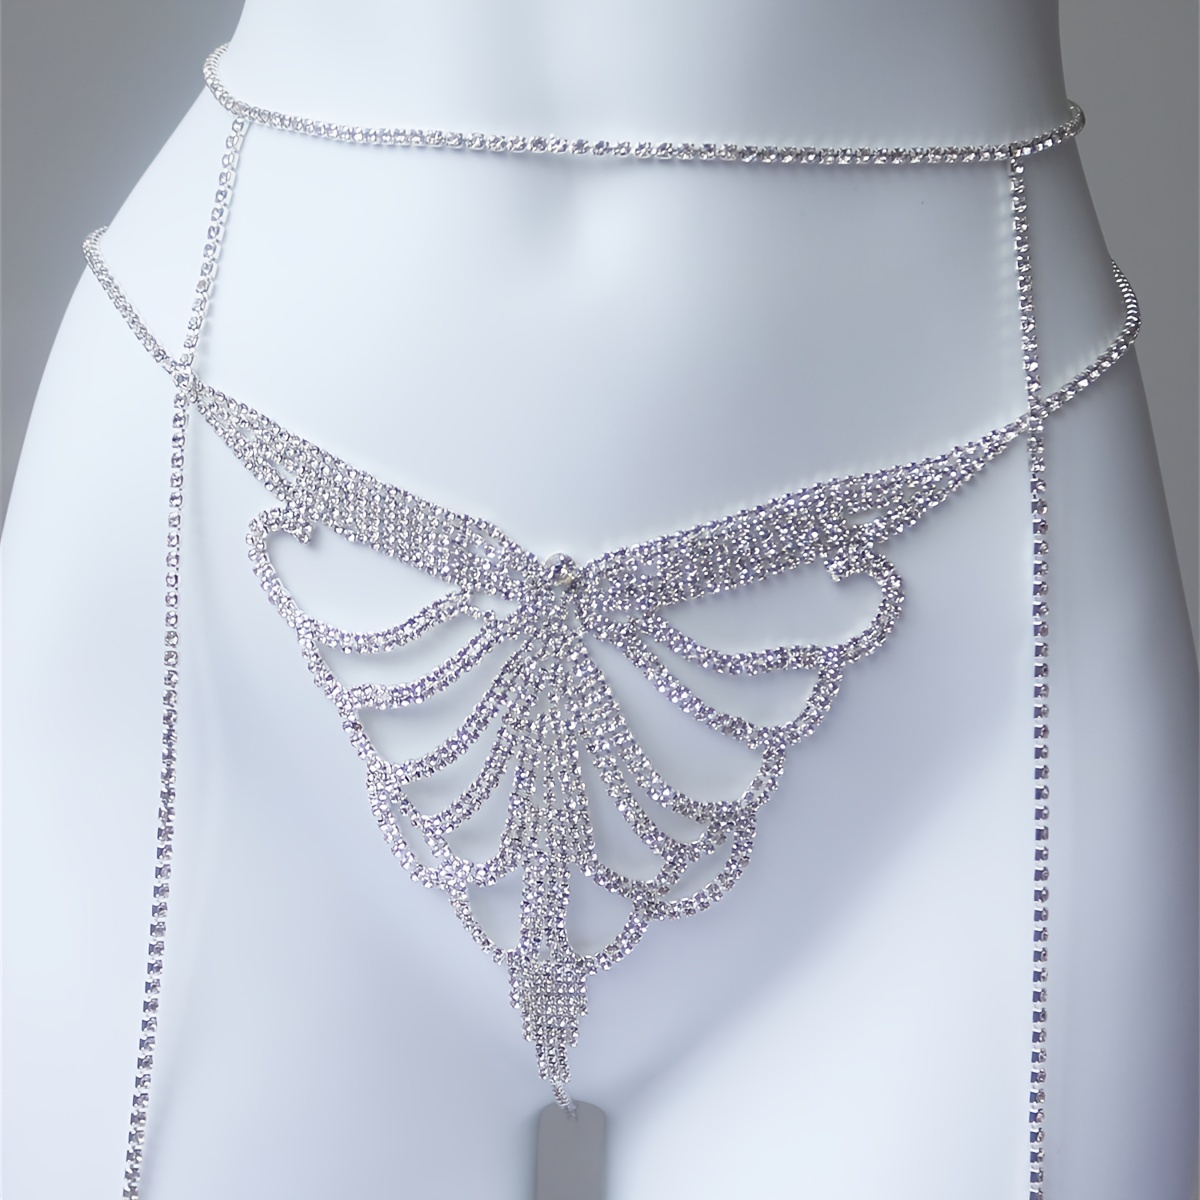 Rhinestone Multi-layer Bra Chain Harness Skirt Chain Party Bikini Chain  Body Jewelry Accessories For Women And Girls